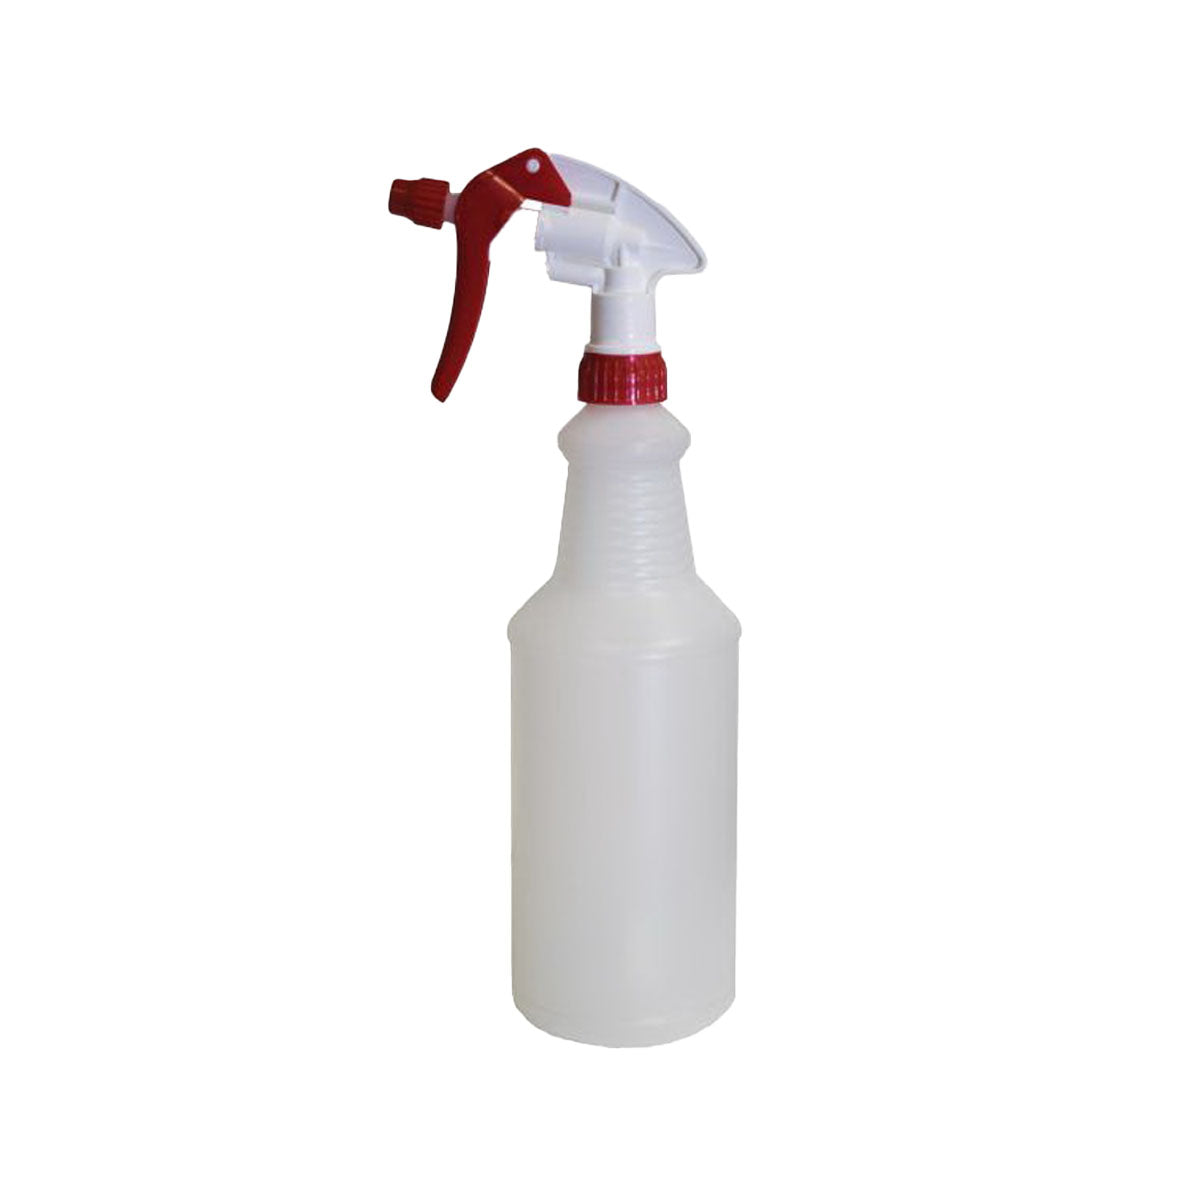 RBL Solvent Resistant Trigger Sprayer & 1 quart Bottle